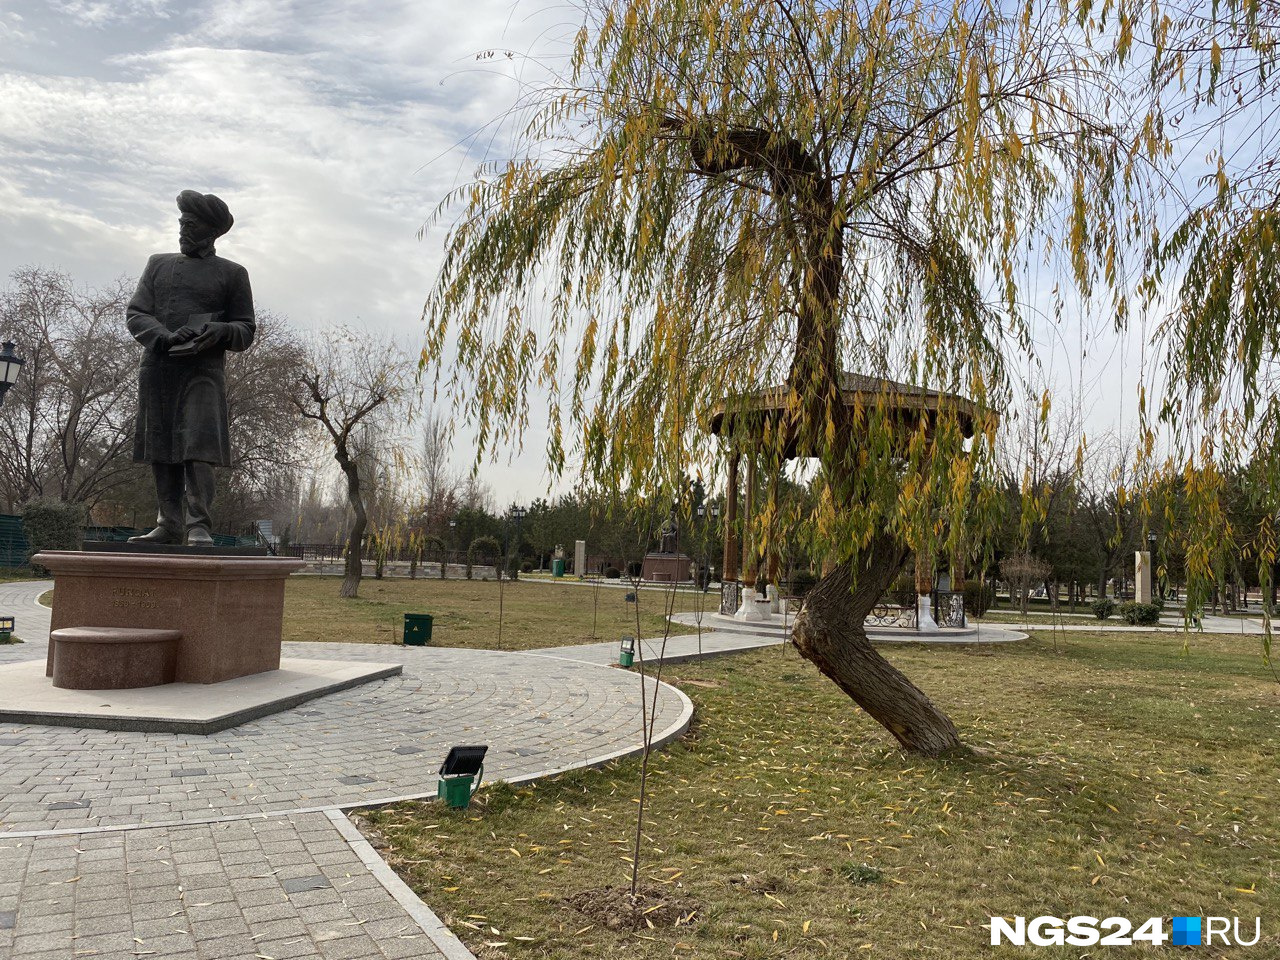 Ташкент, по словам Евгении, более зеленый, чем Красноярск